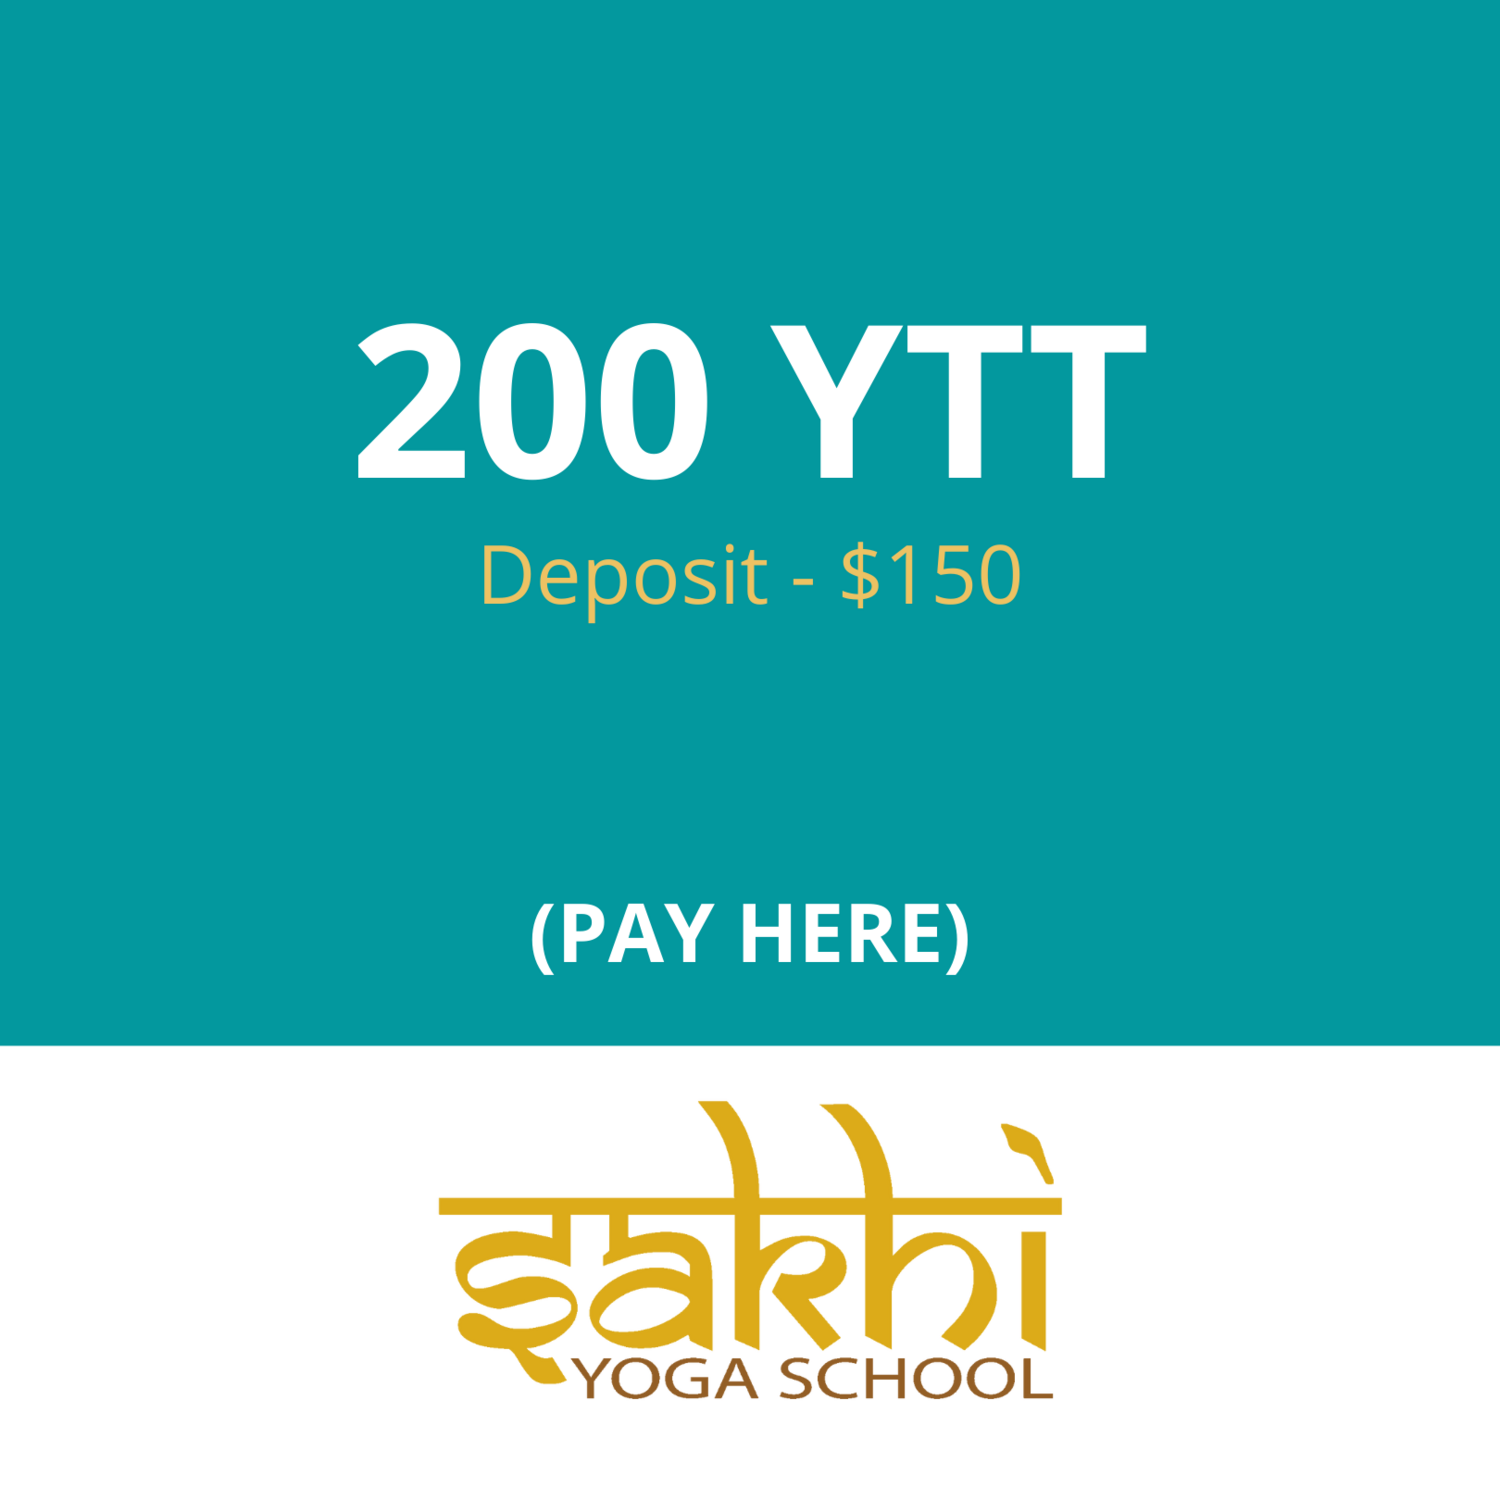 200 YTT  Deposit